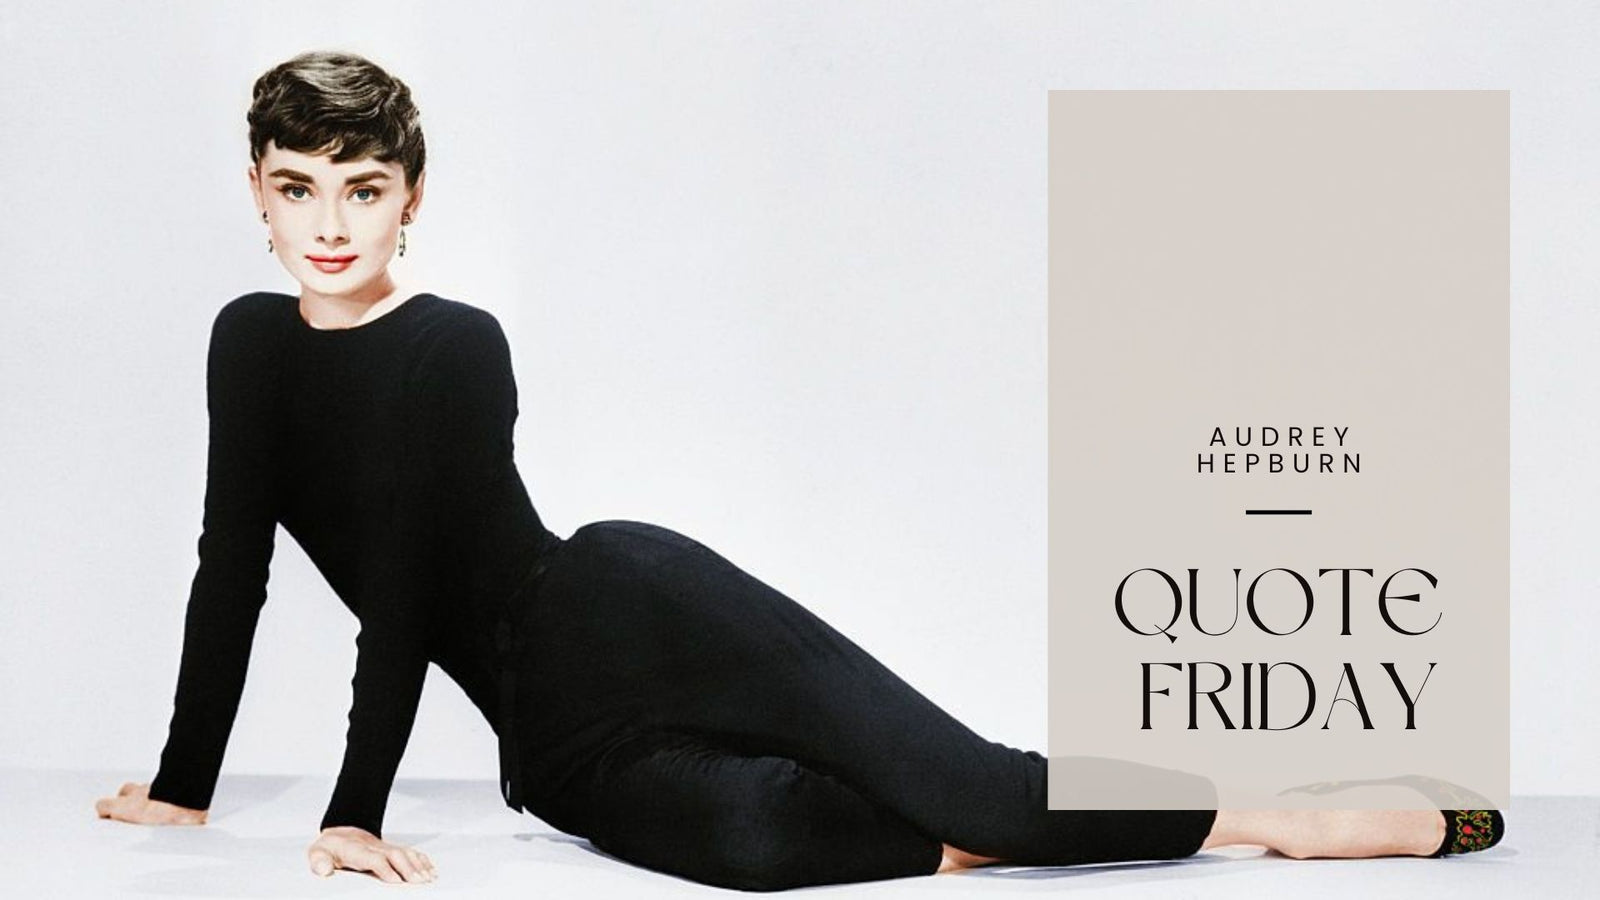 Quote Friday: Audrey Hepburn